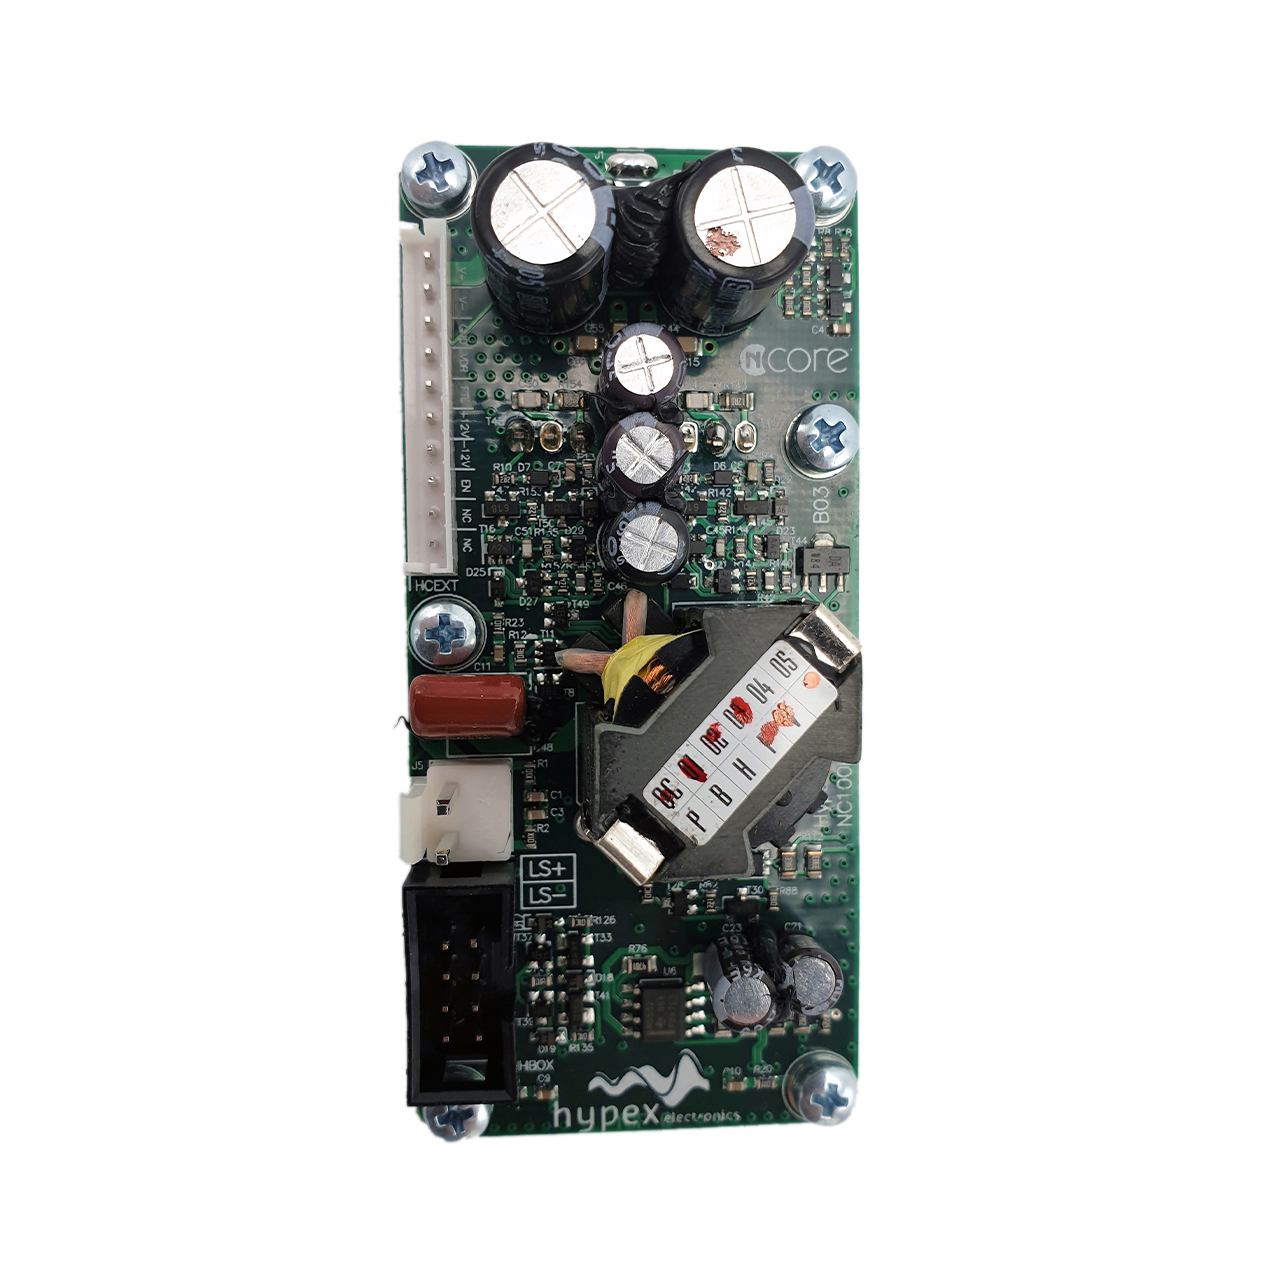 Hypex NC100HF OEM amplifeir module